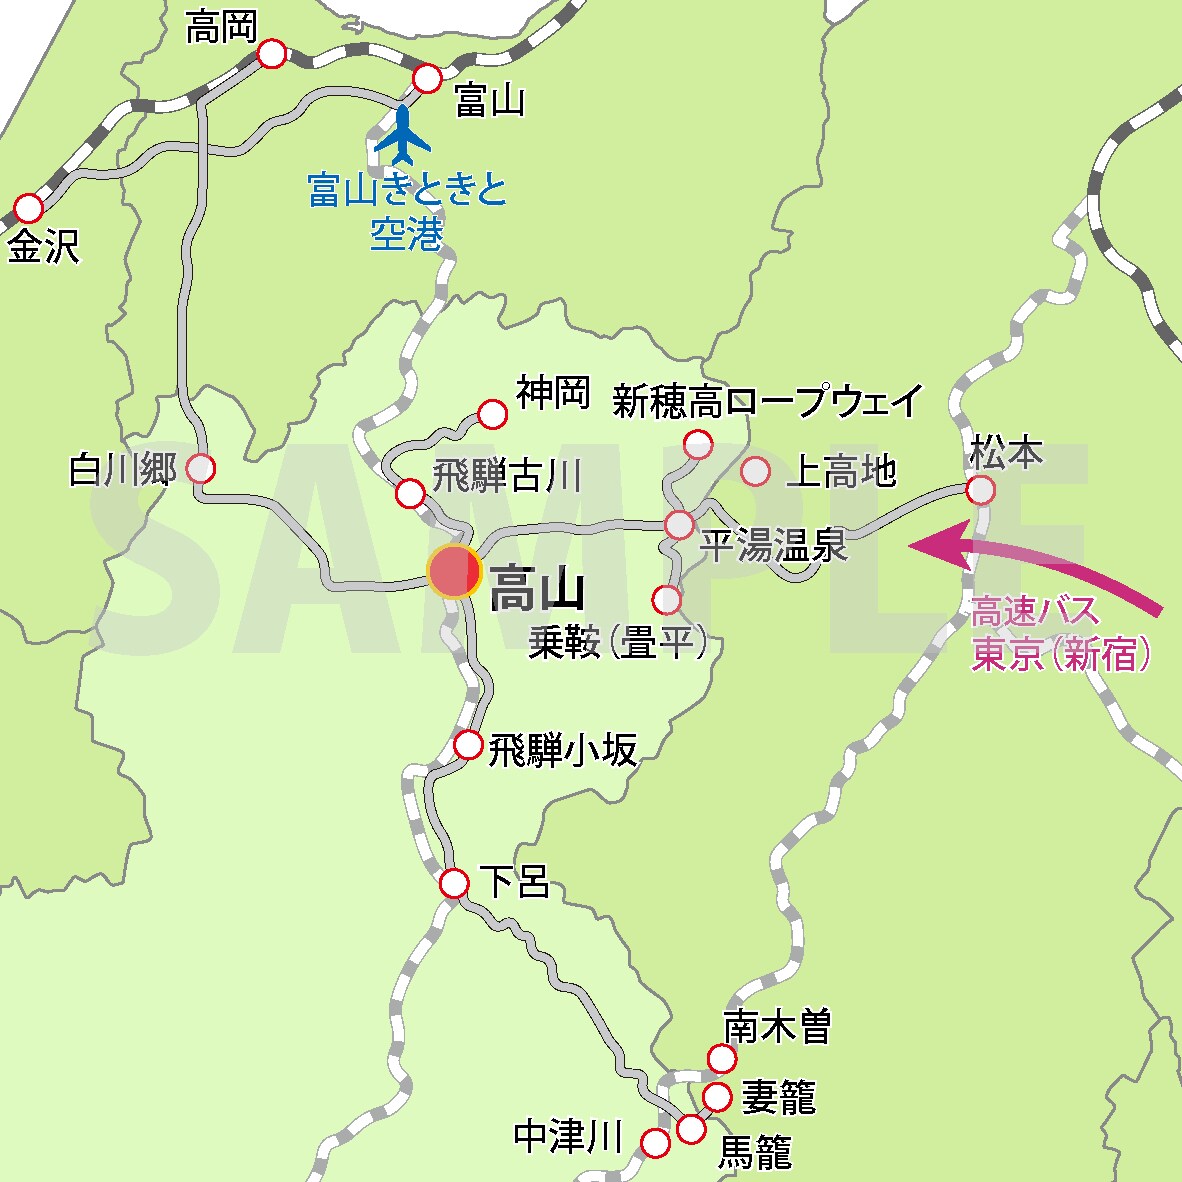 岐阜県高山市への案内図の作成